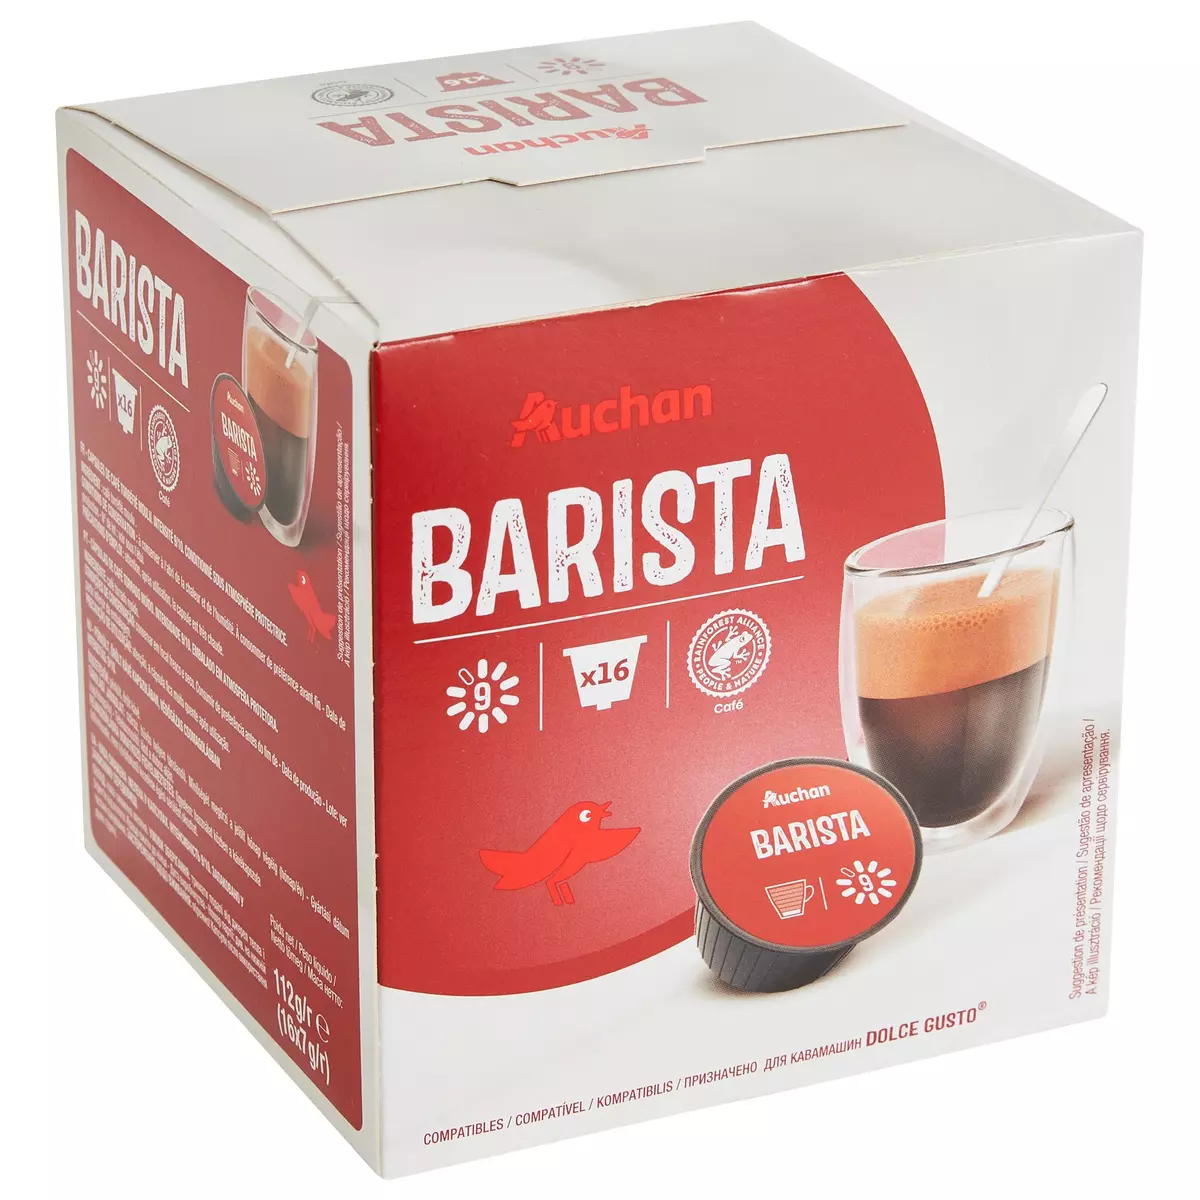 AUCHAN Capsules de café Barista intensité 9 compatible Dolce Gusto 16 capsules 112g